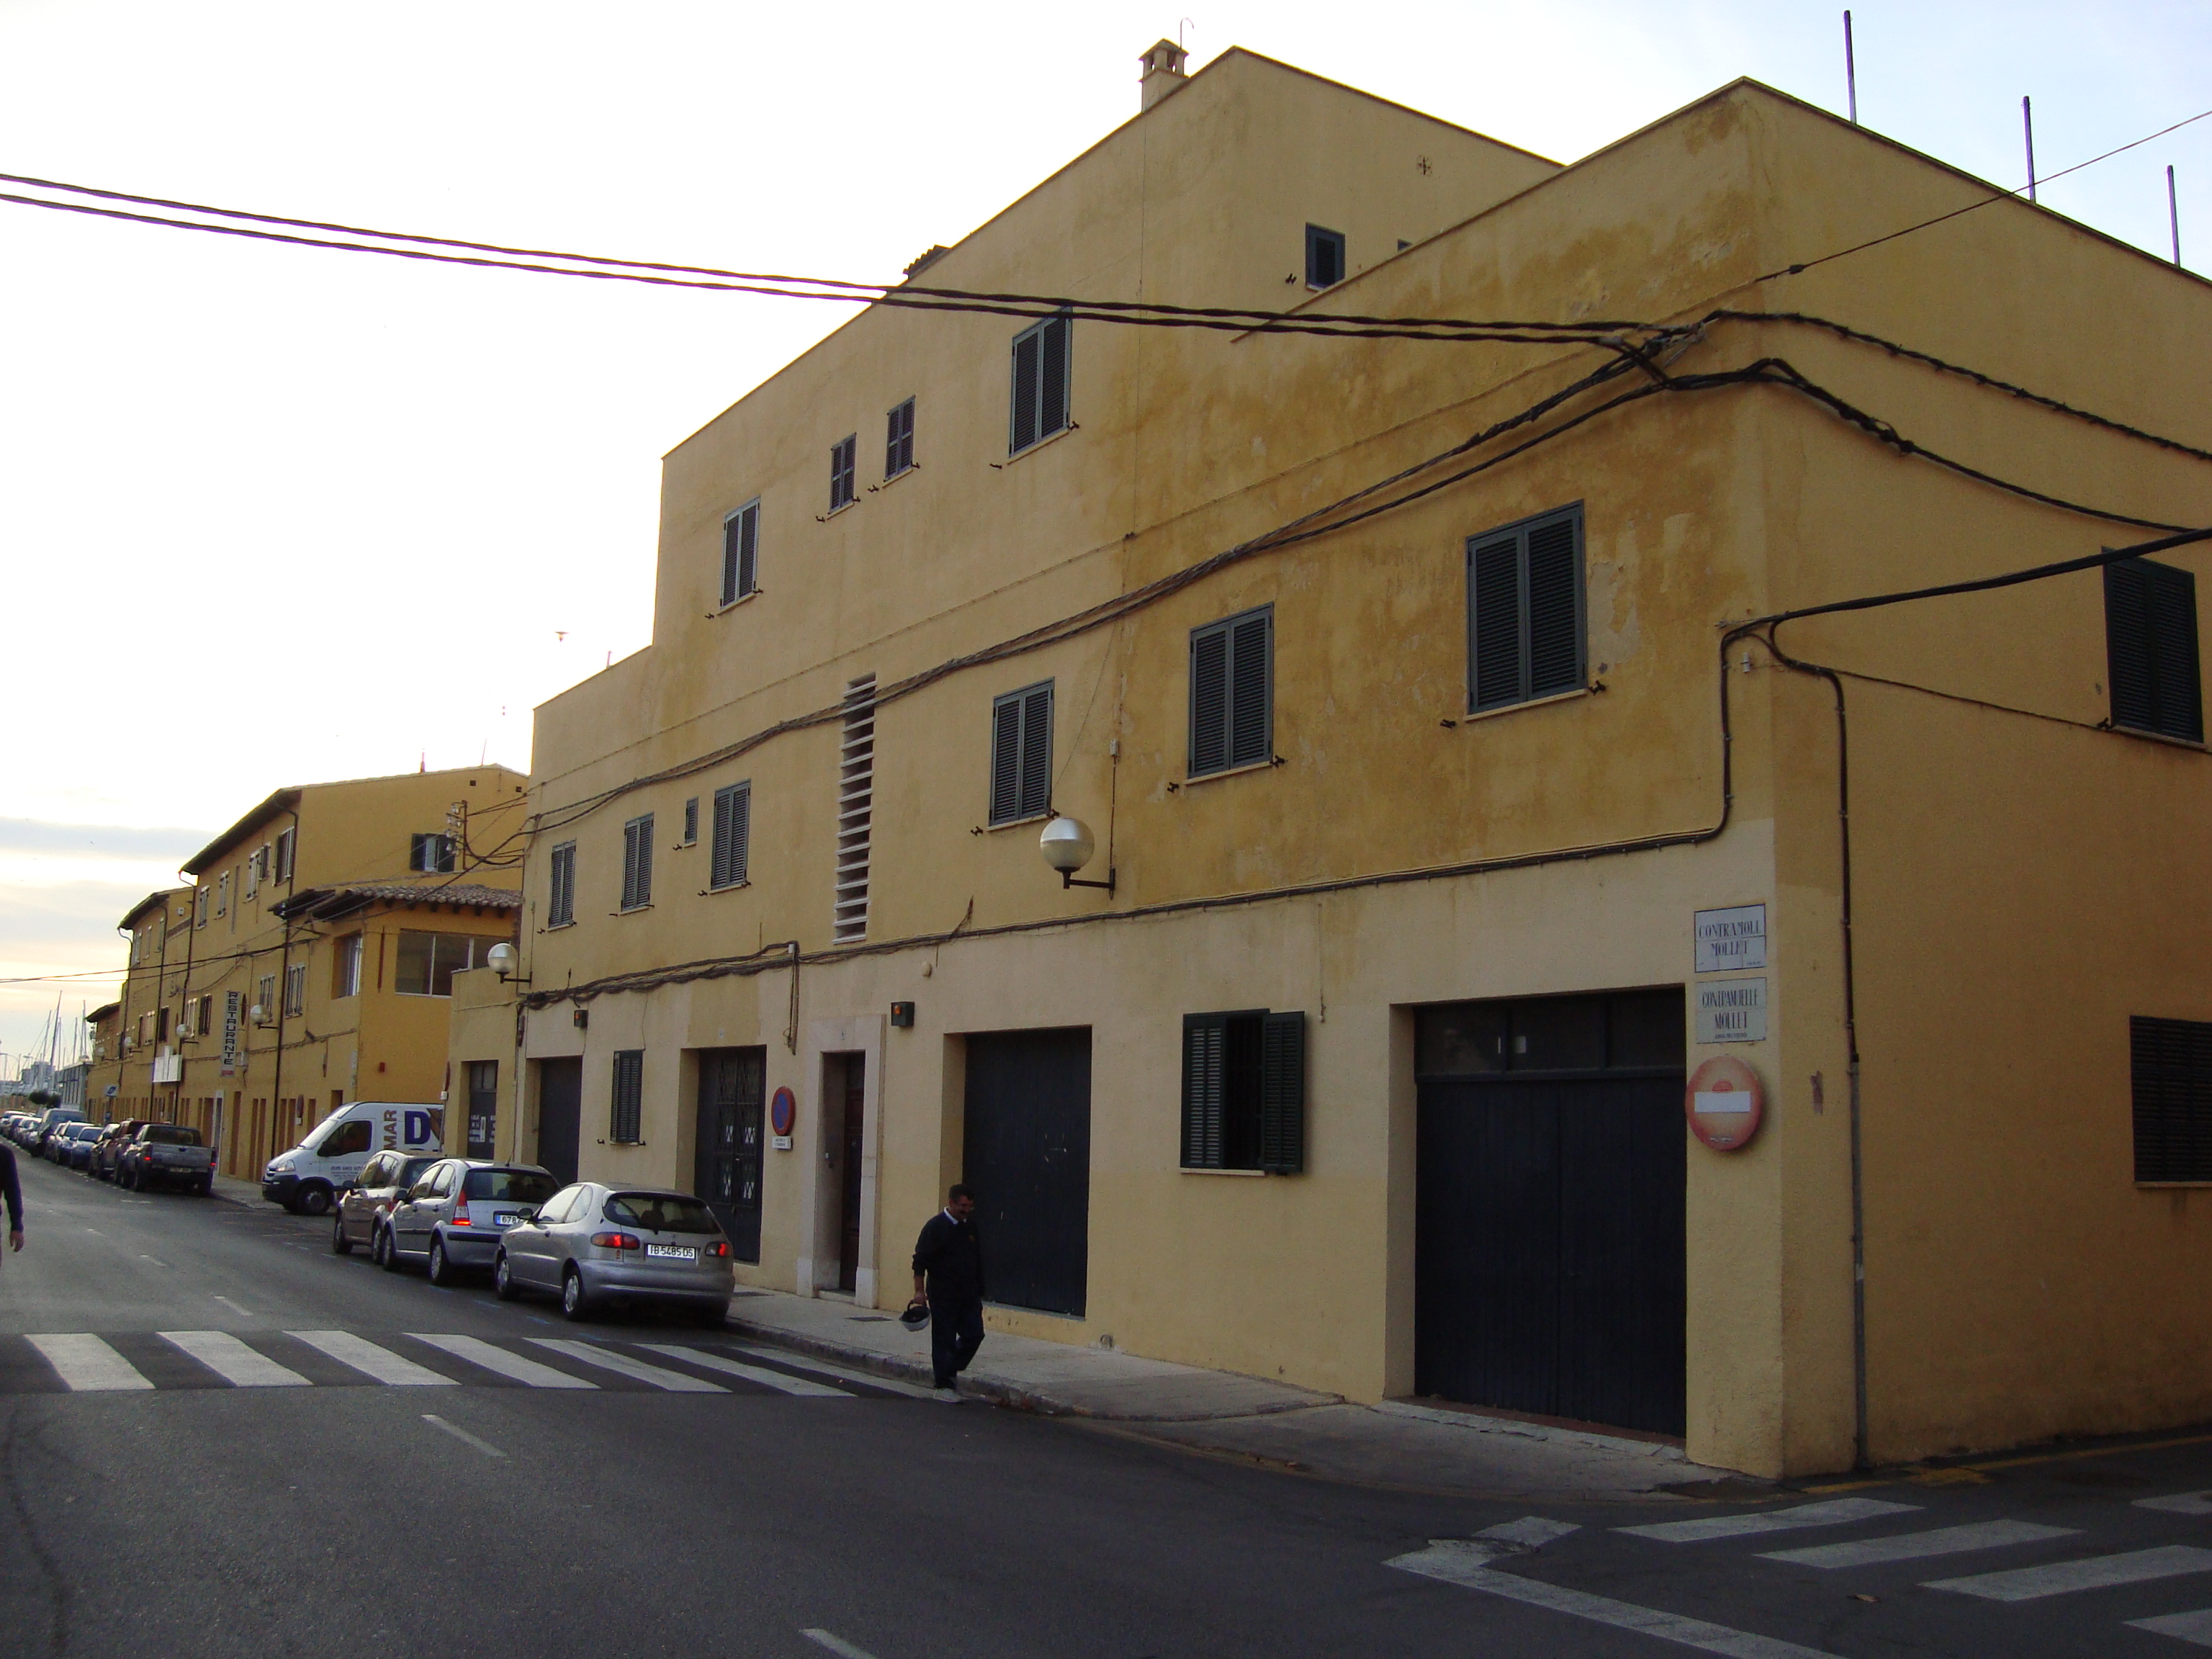 Der Anspruch auf Vermögenshaftung eines Unternehmens wurde zurückgewiesen, als die Pläne über einen Hotelbau im Hafen von Palma bekannt wurden